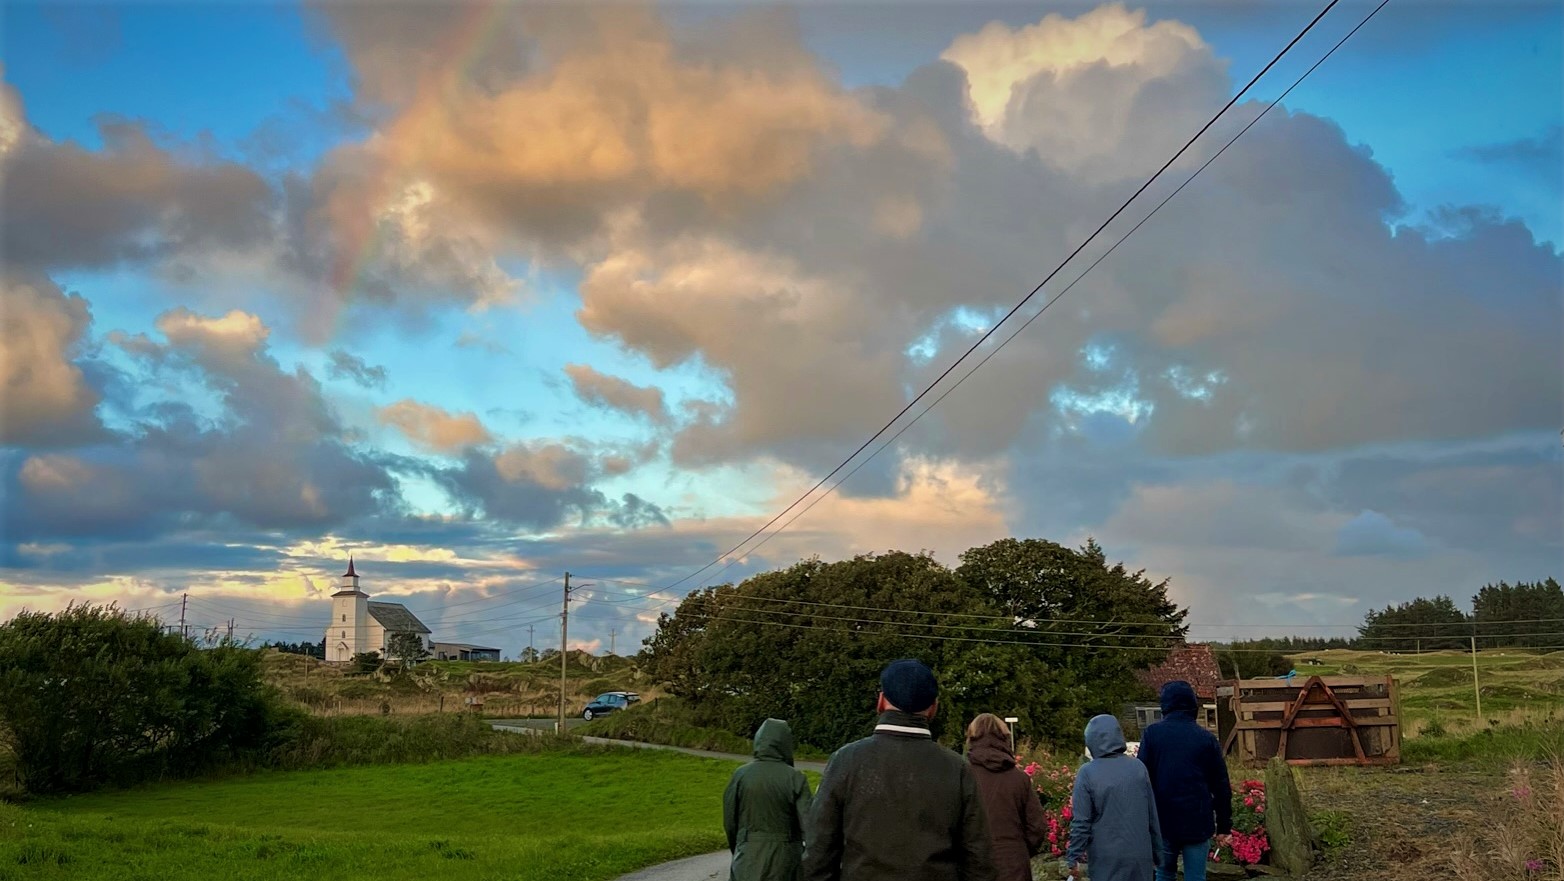 Det ble mer himmel på jord i 2022! Mange tegn på håp finnes i tallene for i fjor. Foto fra visitasen i Torvastad menighet i september.